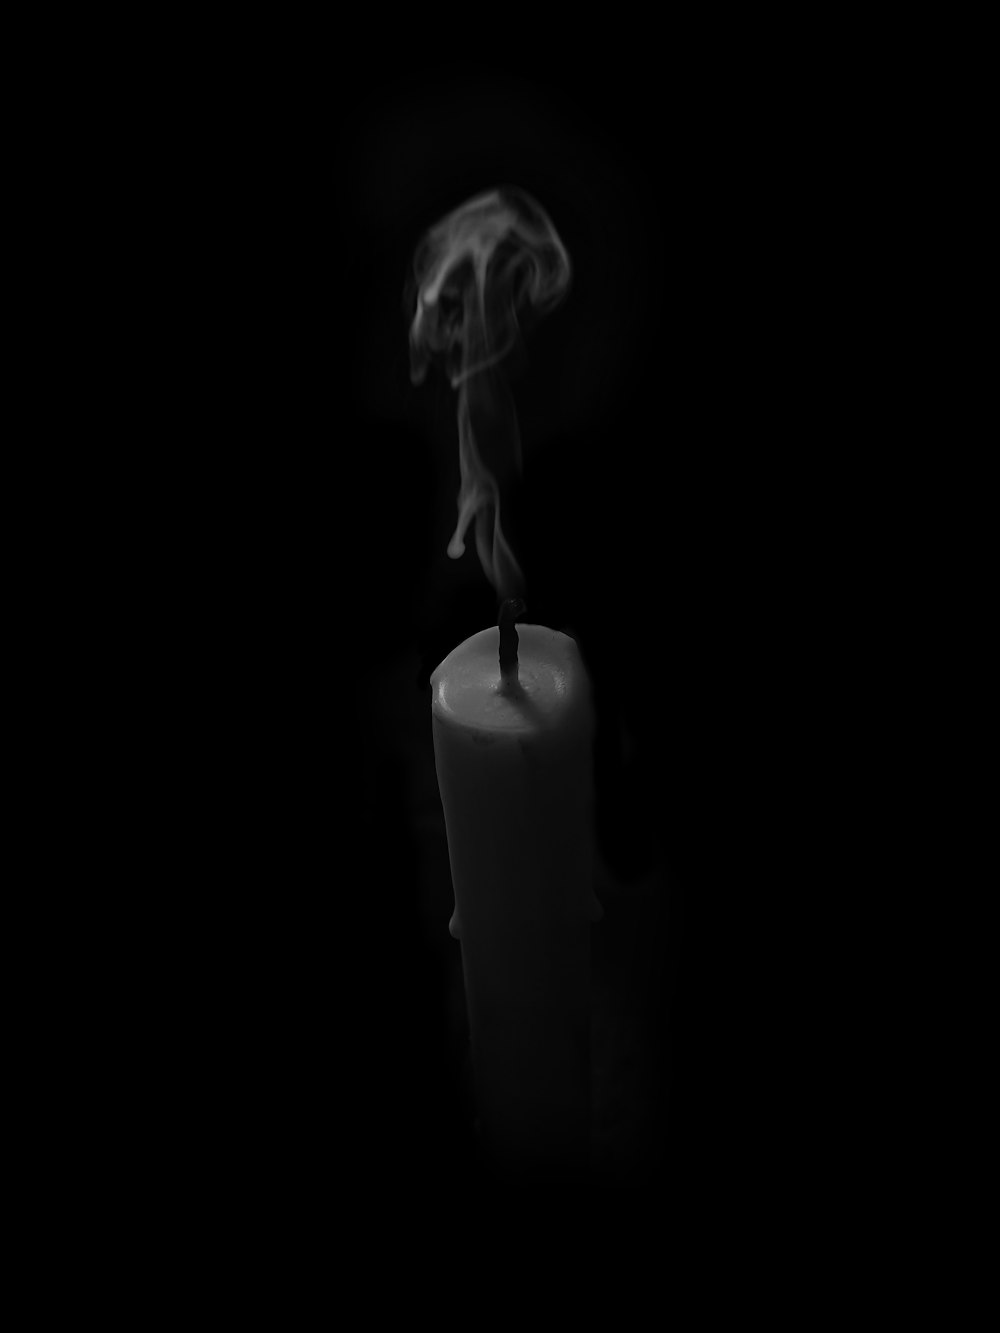 Khám phá thế giới trừu tượng của ảnh vẽ đen trắng, cùng với hình nền khói miễn phí trên Unsplash, để tạo nên một bức ảnh độc đáo và nghệ thuật.